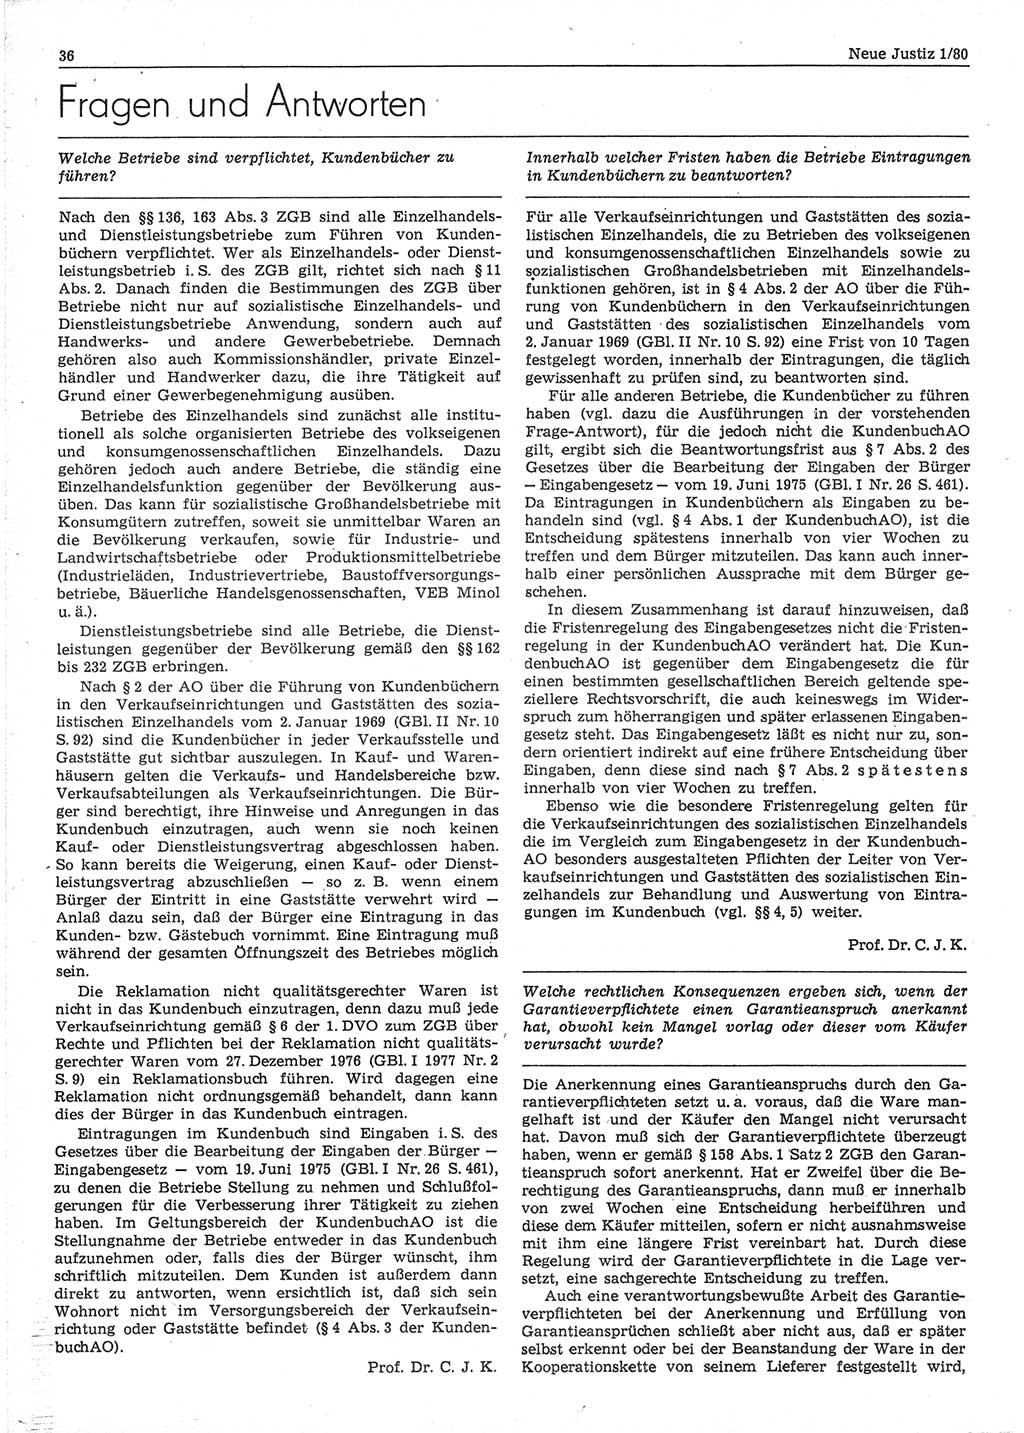 Neue Justiz (NJ), Zeitschrift für sozialistisches Recht und Gesetzlichkeit [Deutsche Demokratische Republik (DDR)], 34. Jahrgang 1980, Seite 36 (NJ DDR 1980, S. 36)